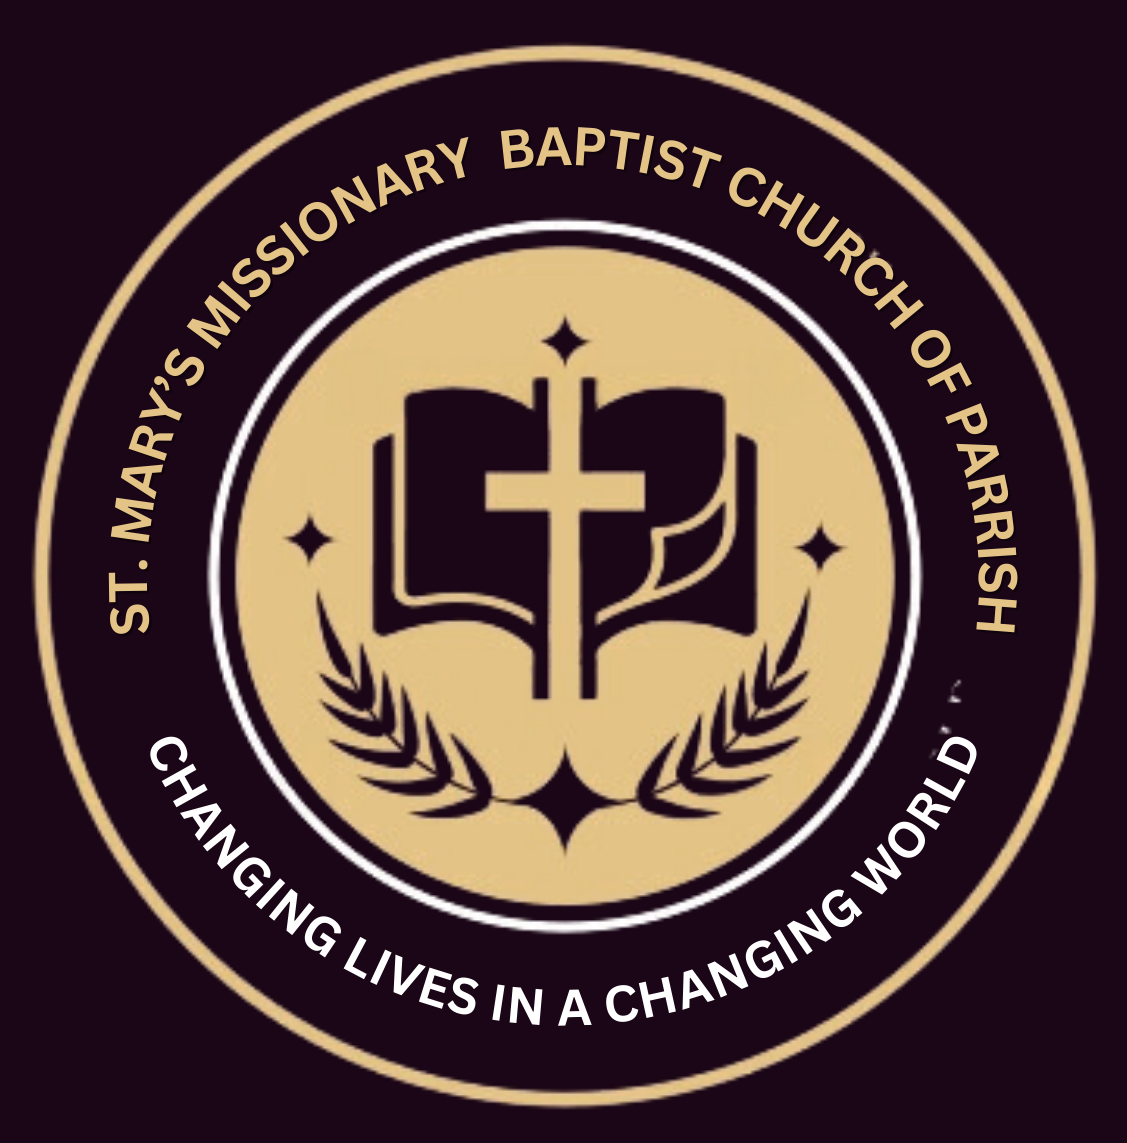 St. Mary's Missionary Baptist Church logo